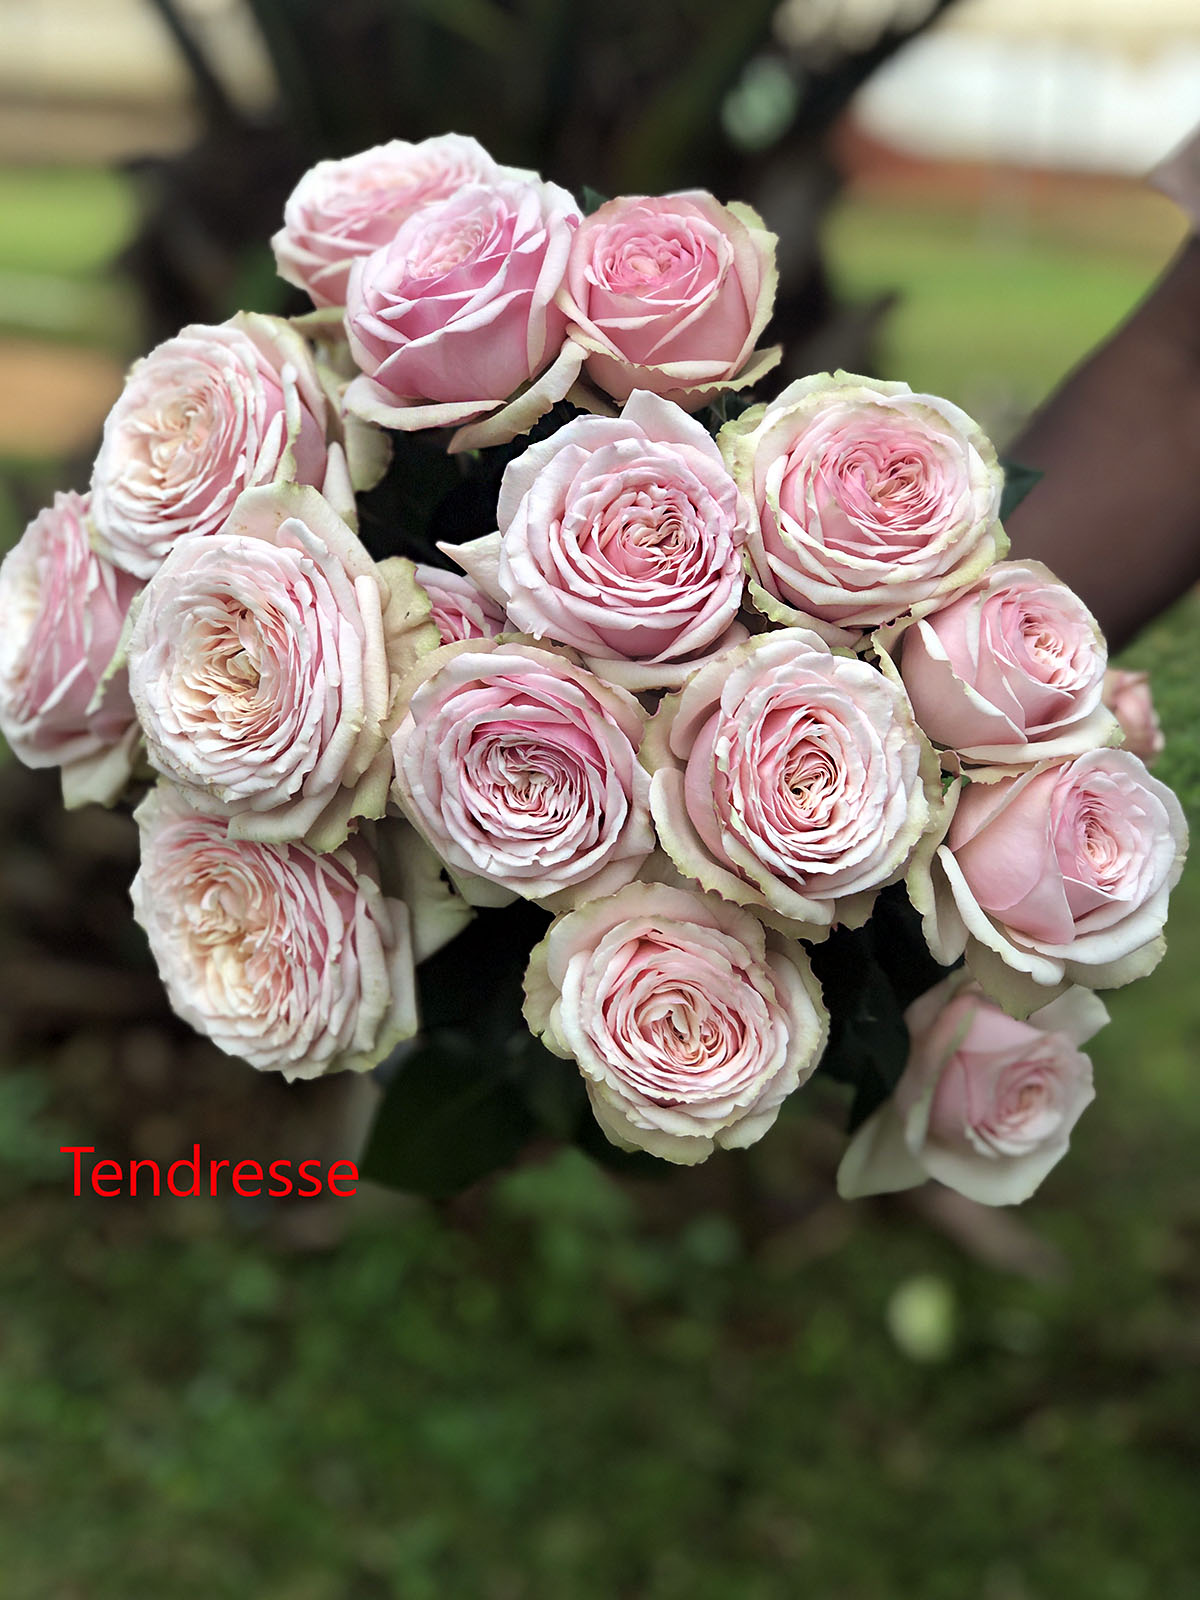 TOTF2021FE 06 Red Lands Roses - Rose Tendresse